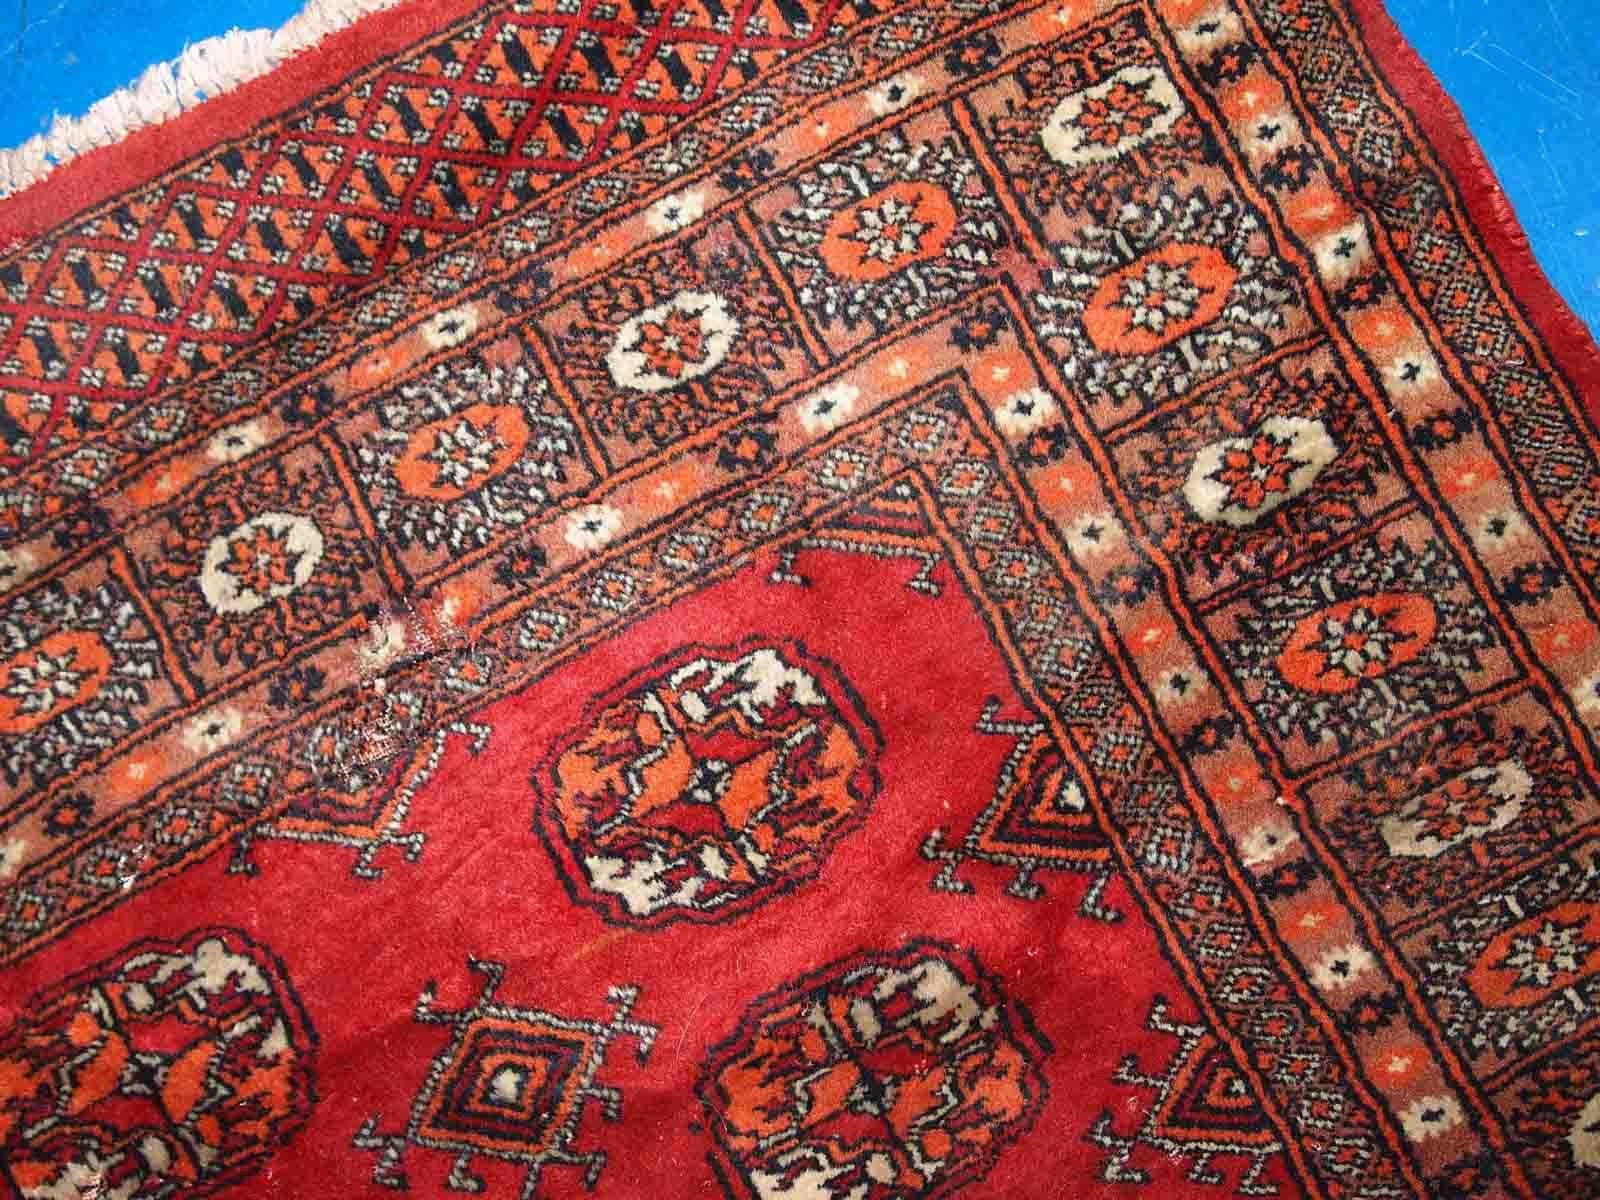 Handgefertigter zentralasiatischer Teppich aus Usbekistan. Der Teppich ist in einem guten Originalzustand vom Ende des 20. Jahrhunderts, er hat minimale Altersspuren. Sie wurde aus roter Wolle und im klassischen Buchara-Design